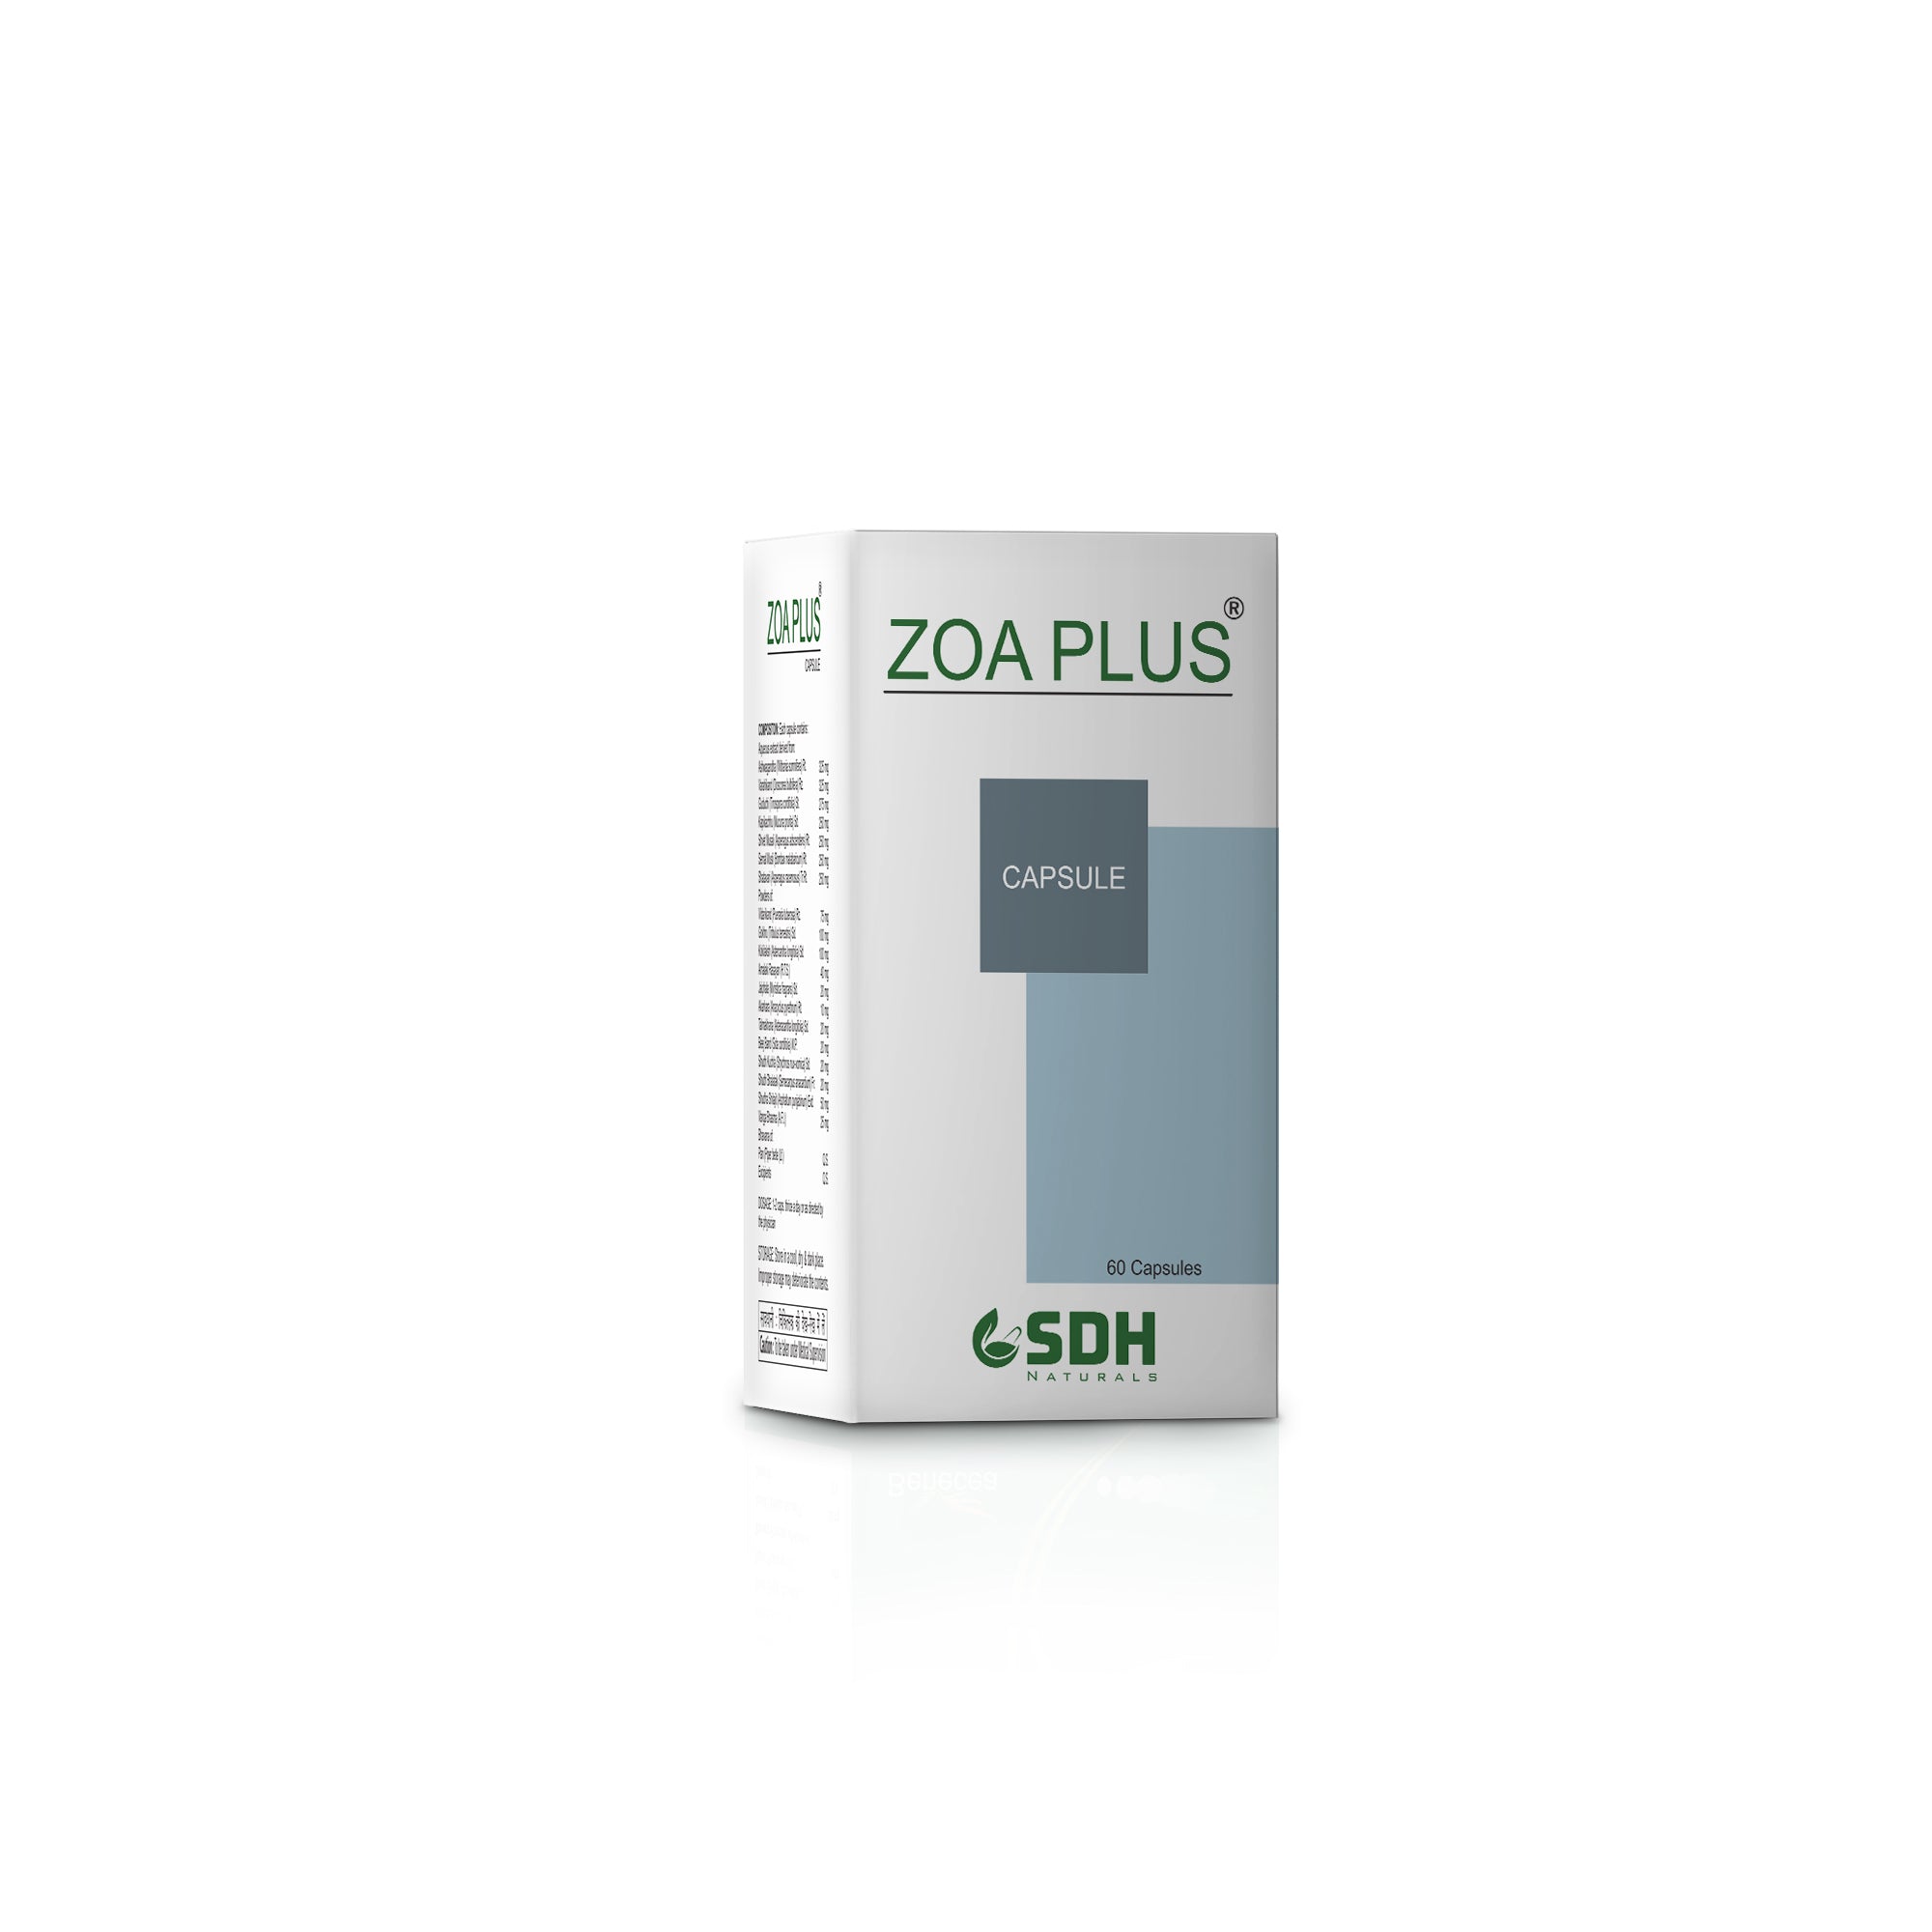 Zoa Plus - Best Men's Health Care Supplement